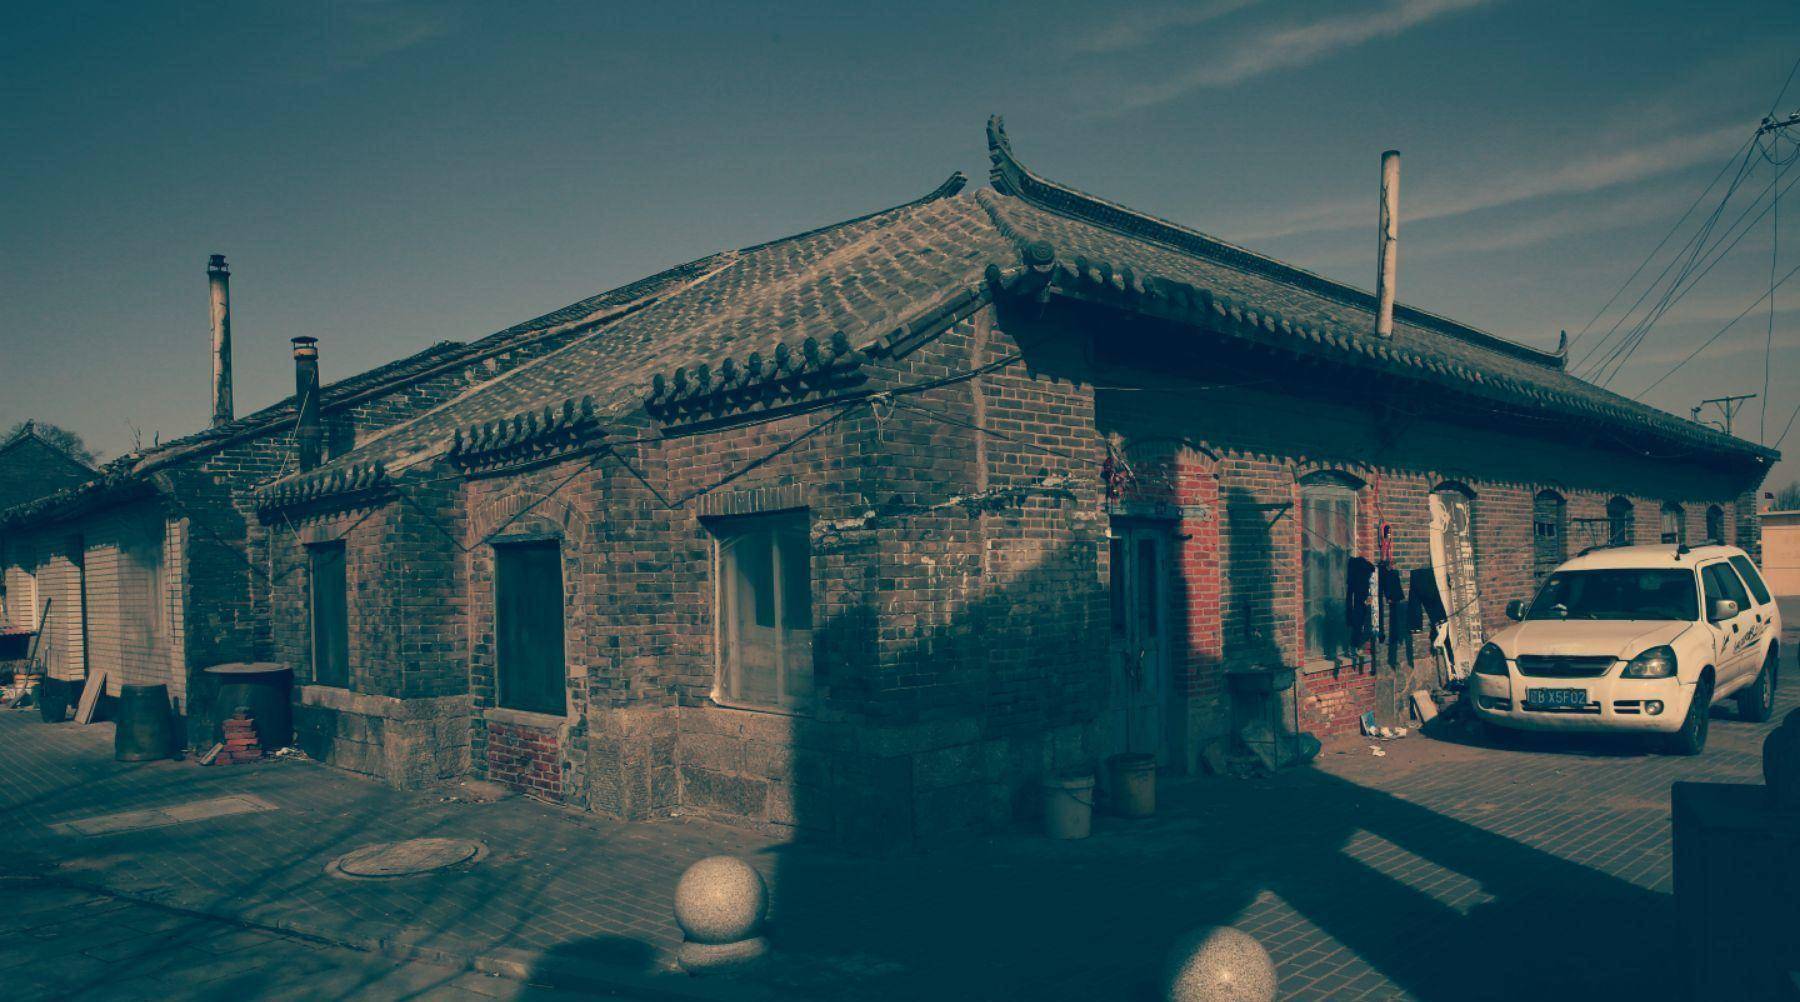 大连:庄河青堆子古镇,一座拥有1300年历史的辽南古镇